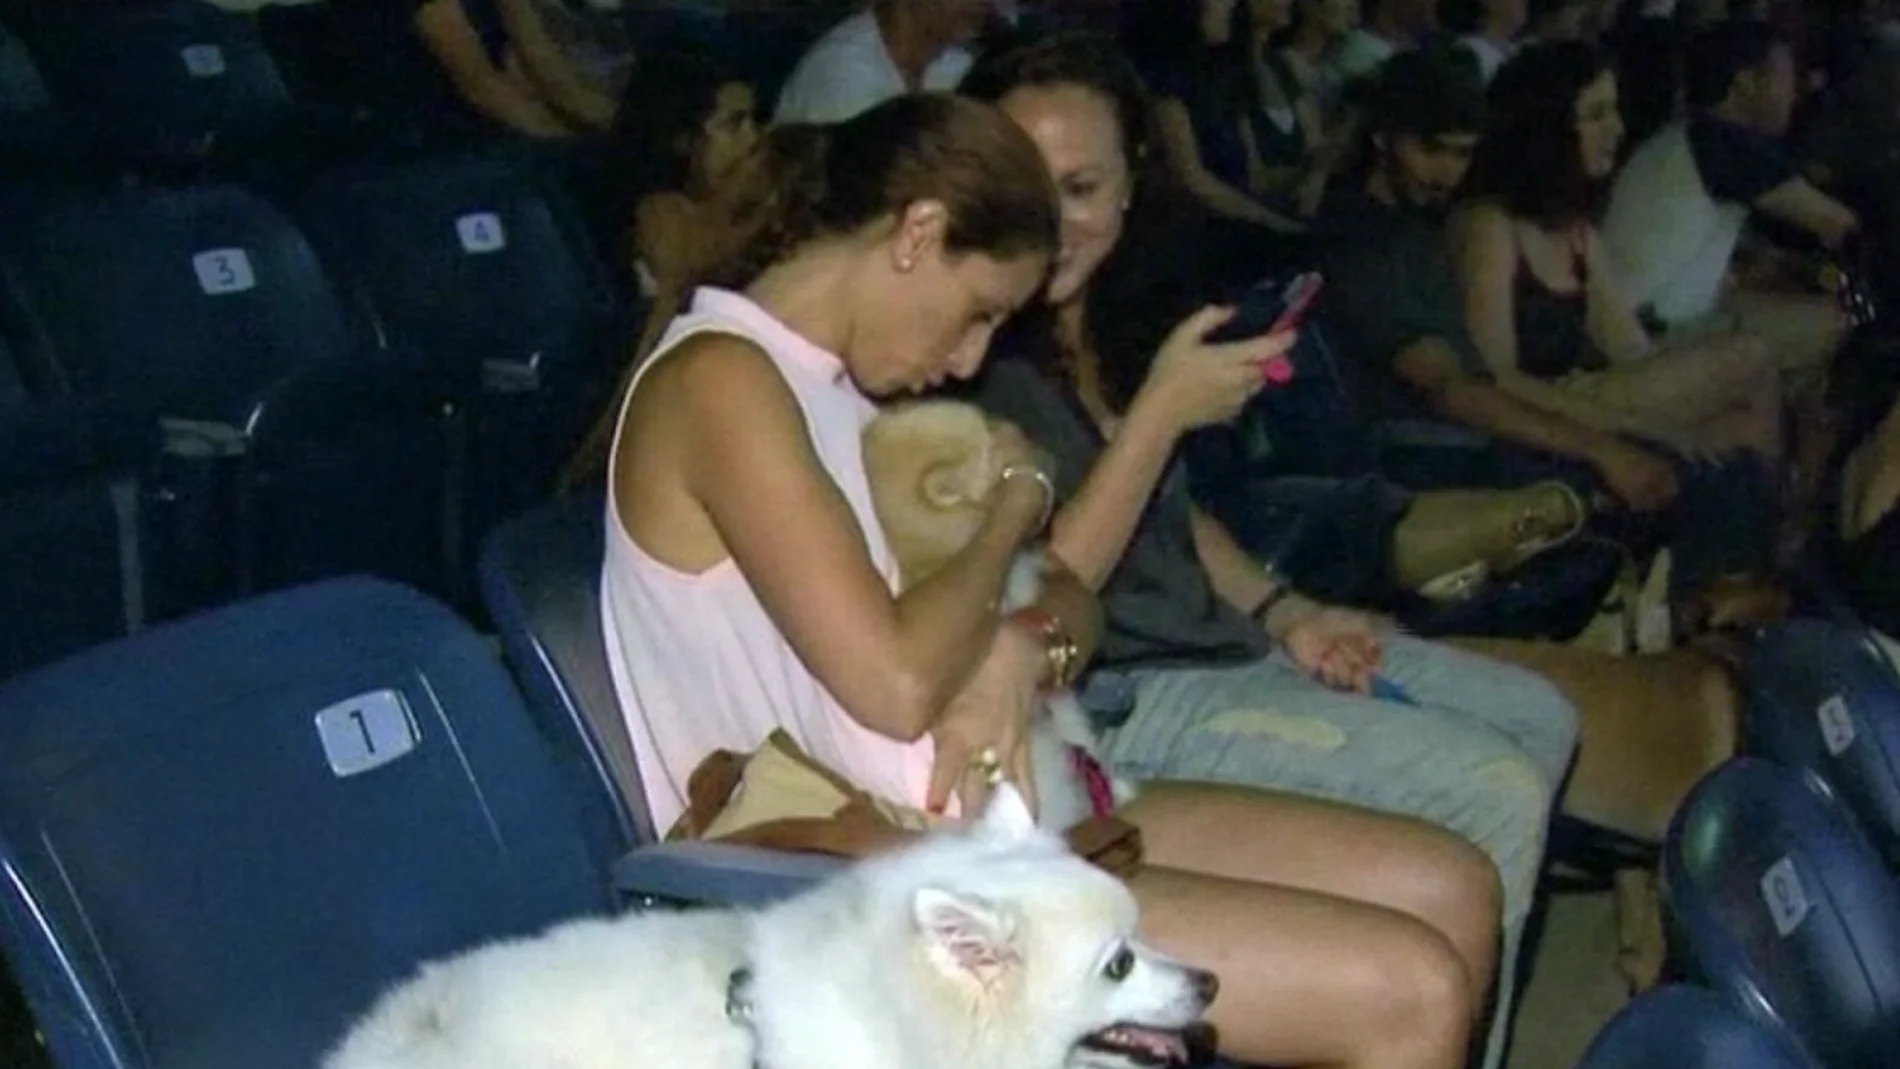 Un cine al aire libre en Israel permite la entrada de perros